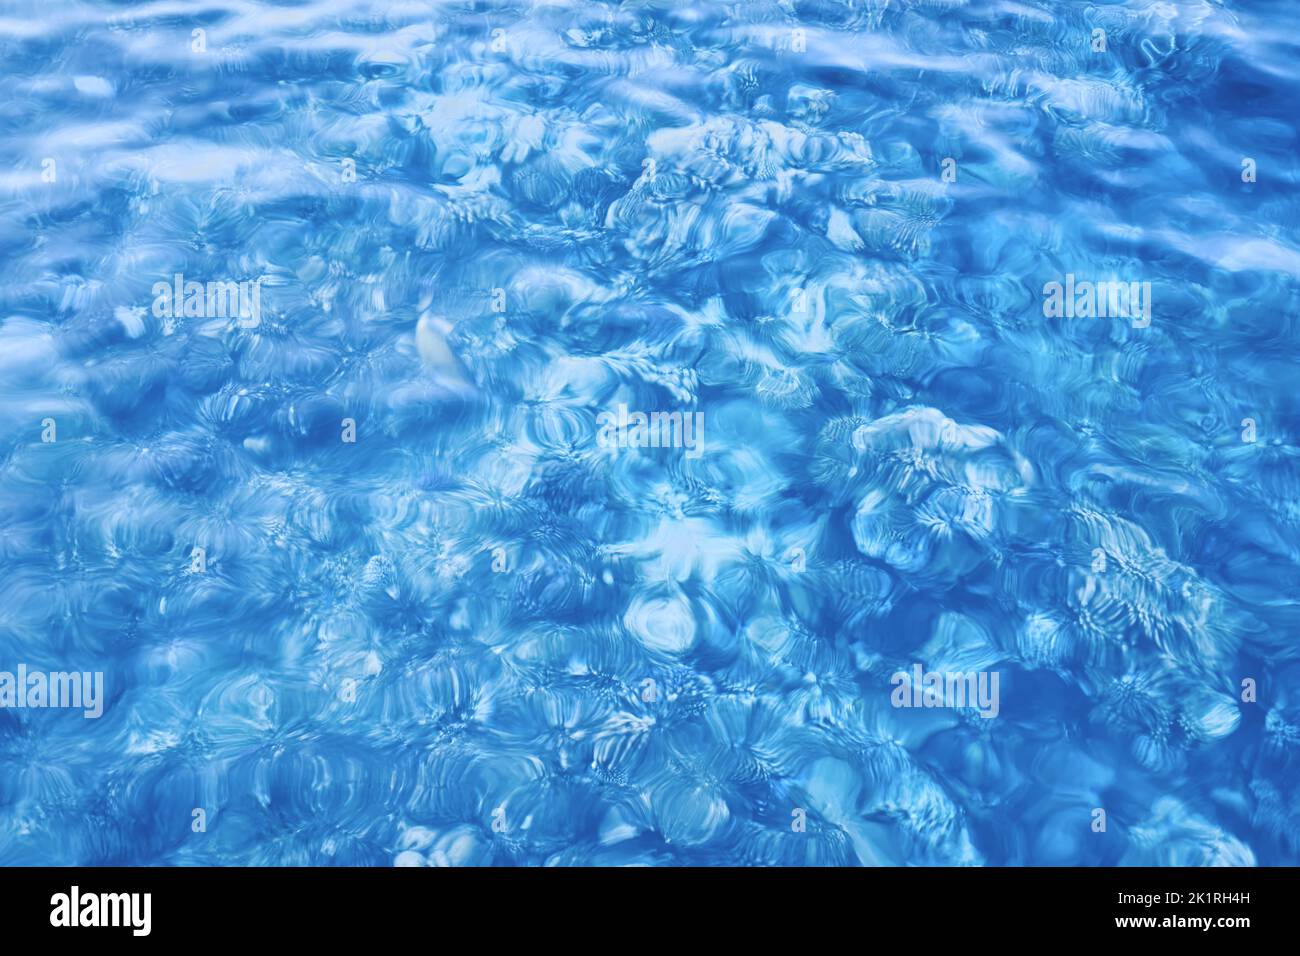 Movimiento Imagen borrosa de aguas poco profundas, naturaleza abstracta fondo azul. Foto de stock